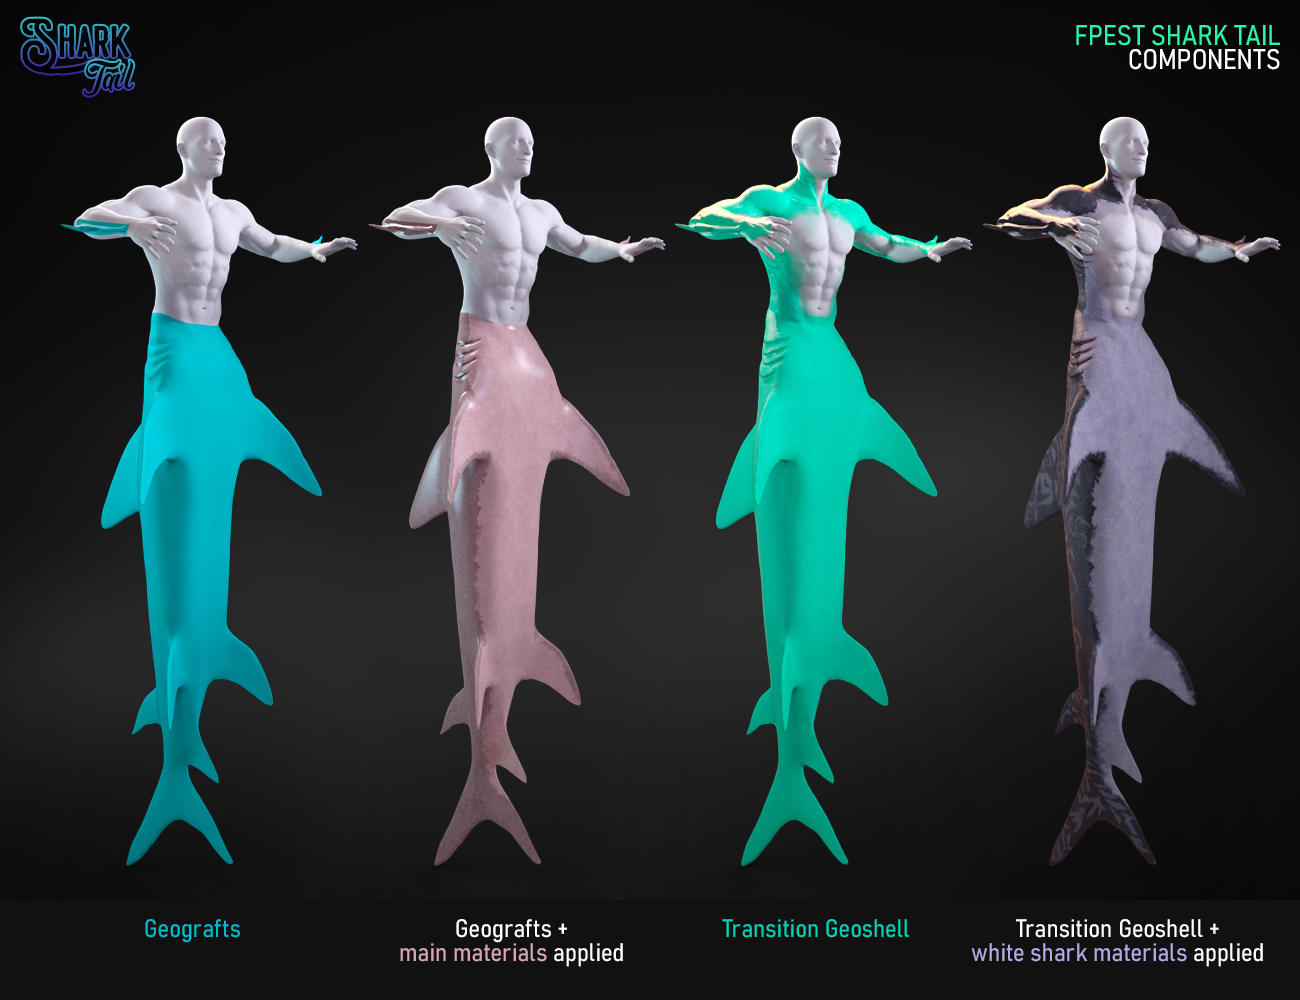 Shark Tail for Genesis 8 Males by: FenixPhoenixEsid, 3D Models by Daz 3D